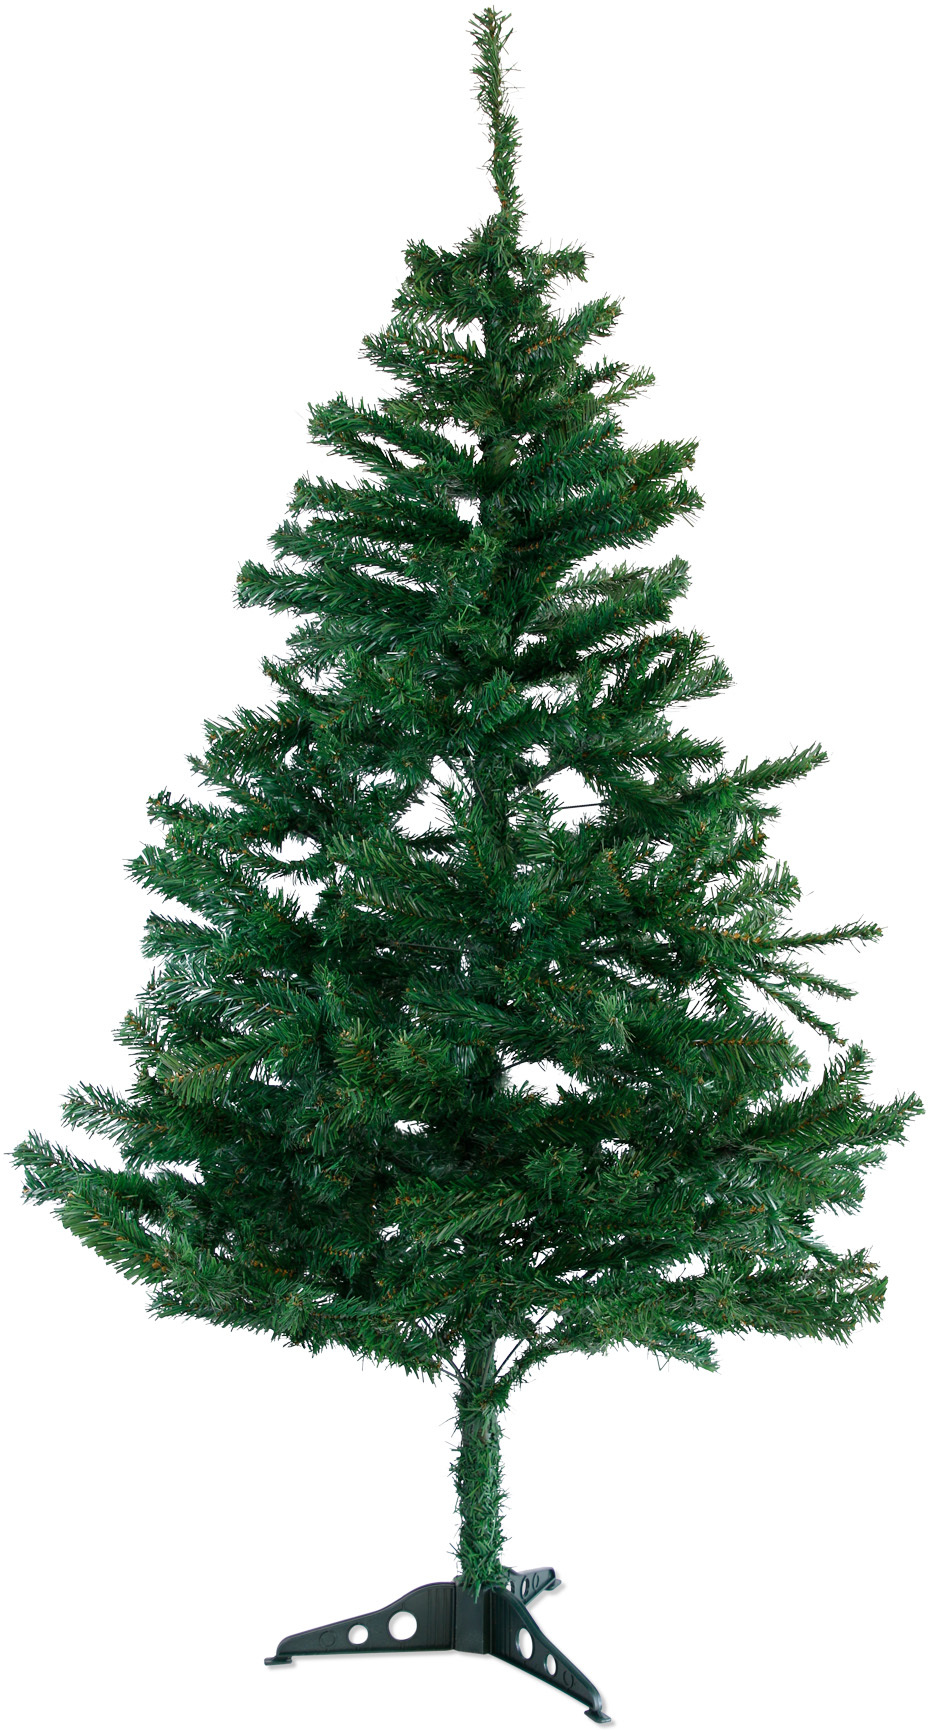 180cm künstlicher Weihnachtsbaum Christbaum Tannenbaum mit Metallständer, Schneller Montage und Faltung (180cm, Grün PVC)